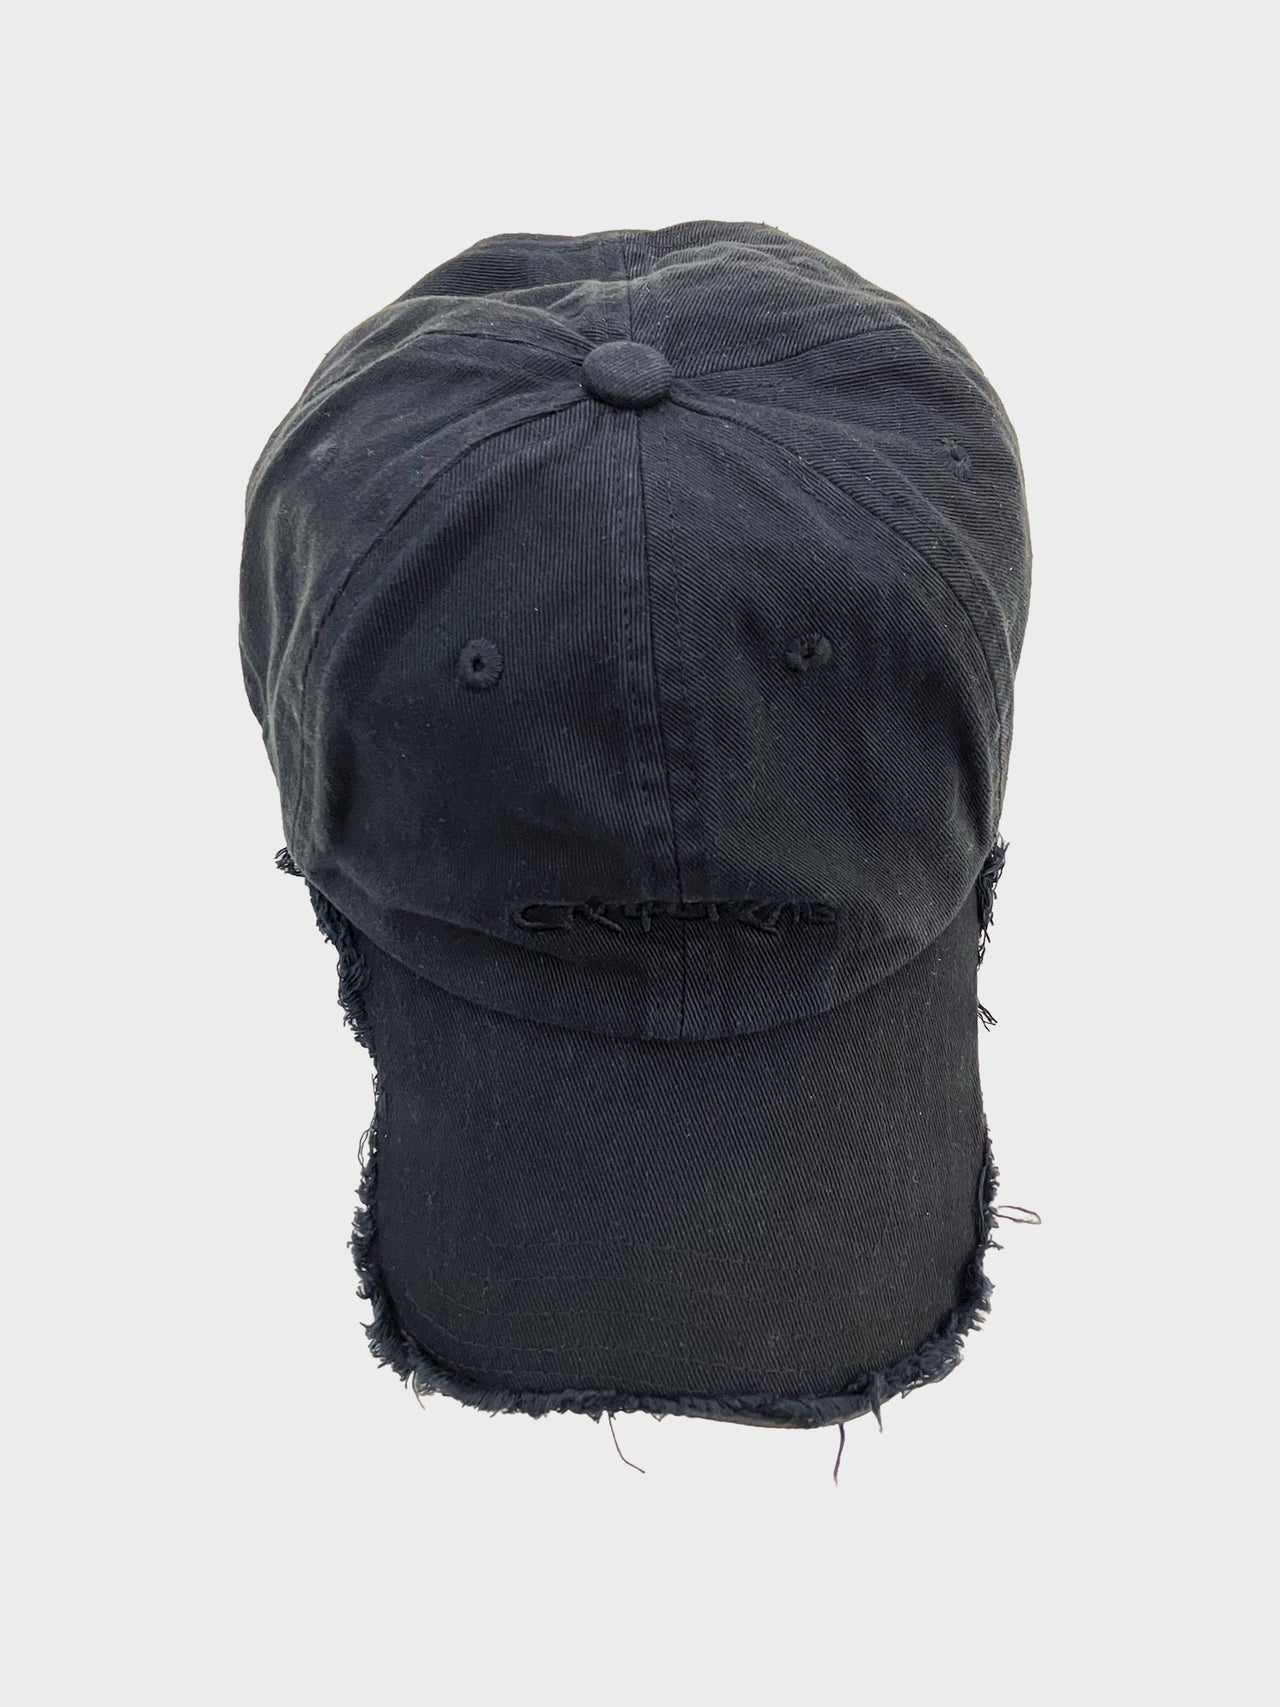 CAMPER LAB / CAP (BLACK)